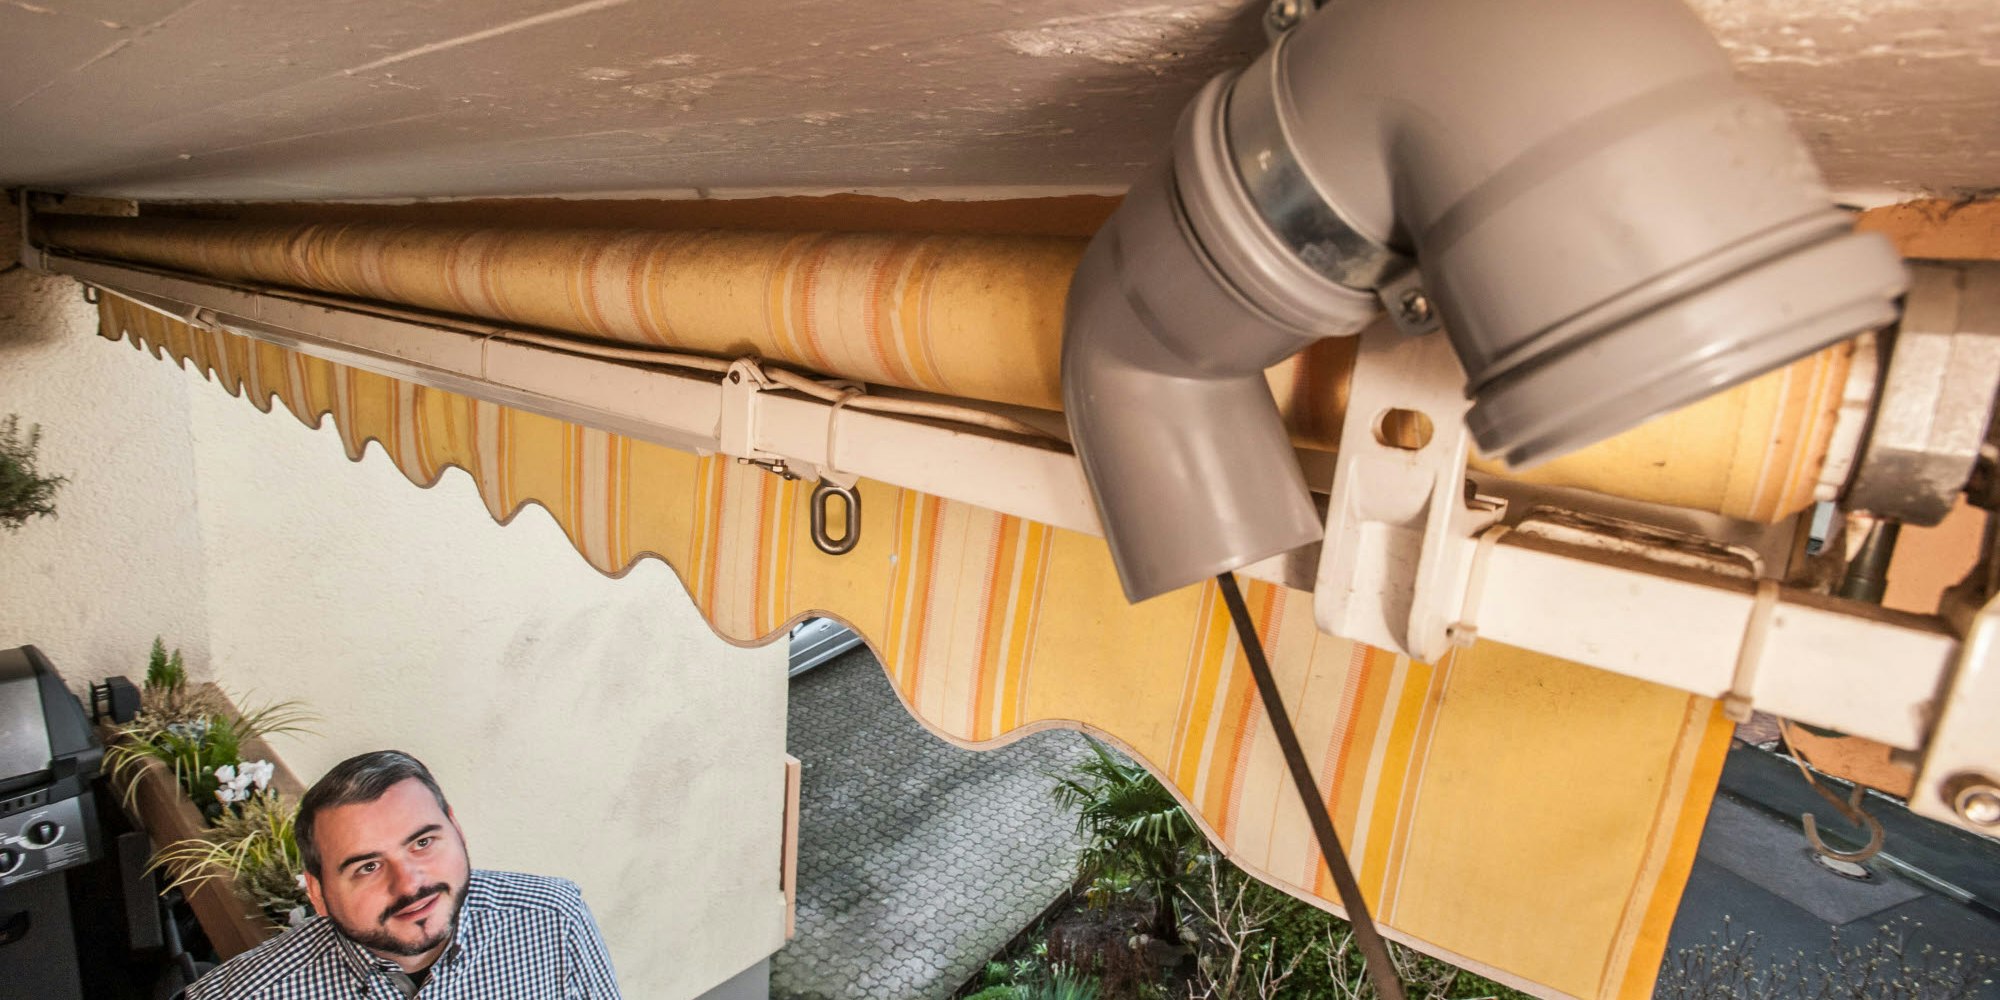 Einen der 40 privaten Feinstaubsensoren in Kunststoffröhren betreibt Peter Schmidt auf seinem Balkon.